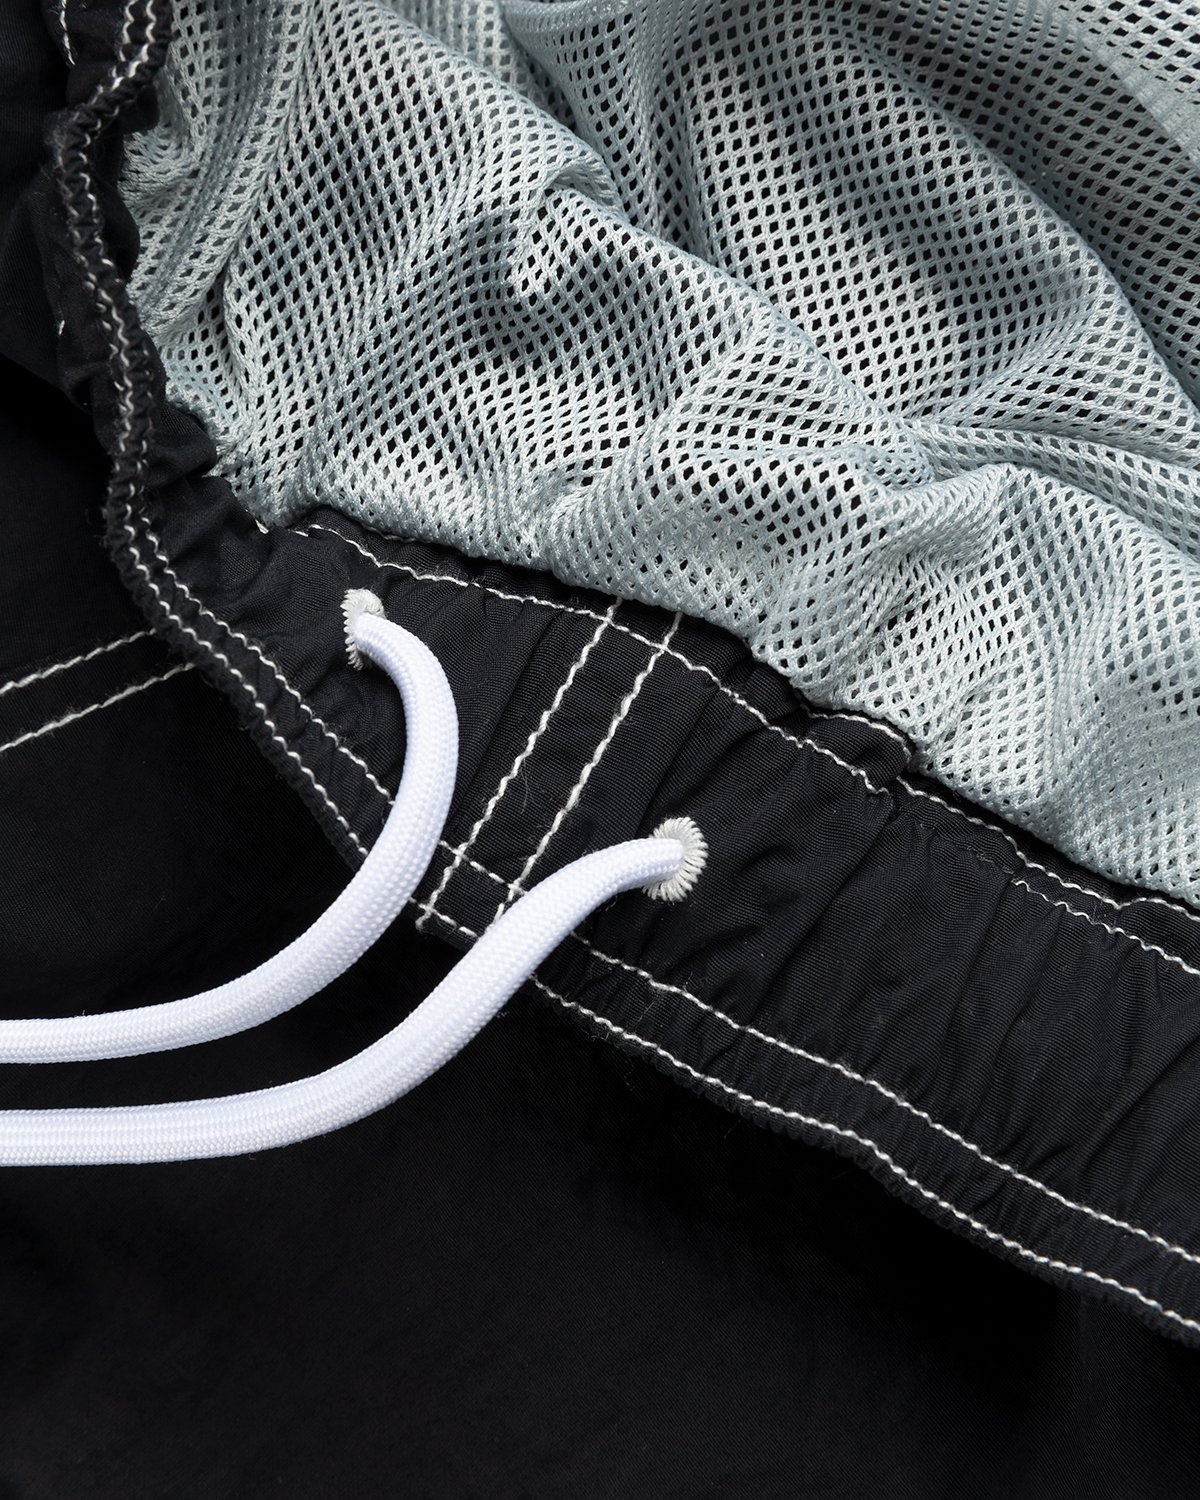 Highsnobiety – Contrast Brushed Nylon Water Shorts Black - Active Shorts - Black - Image 6